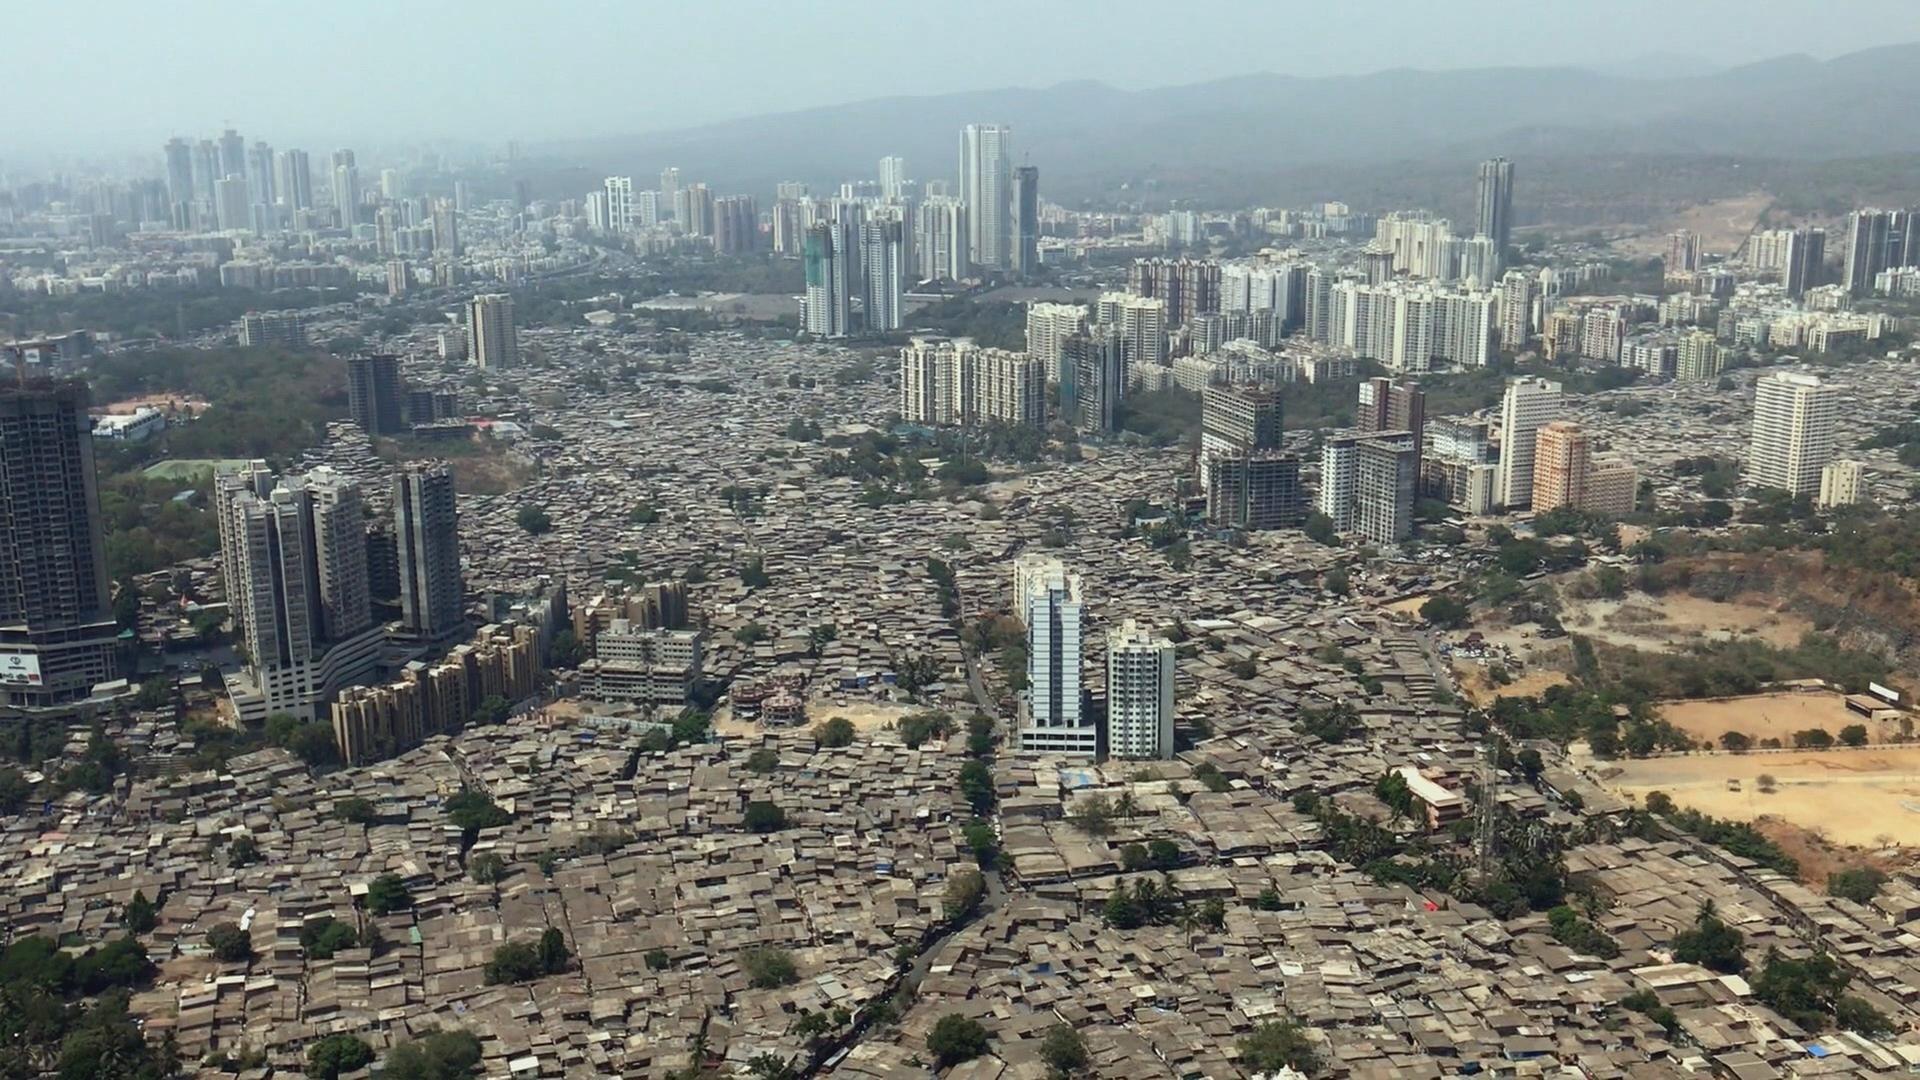 Luftaufnahme Mumbai: Zwischen vielen Hochhäusern ist eine große Fläche mit flachen Häusern zu sehen.